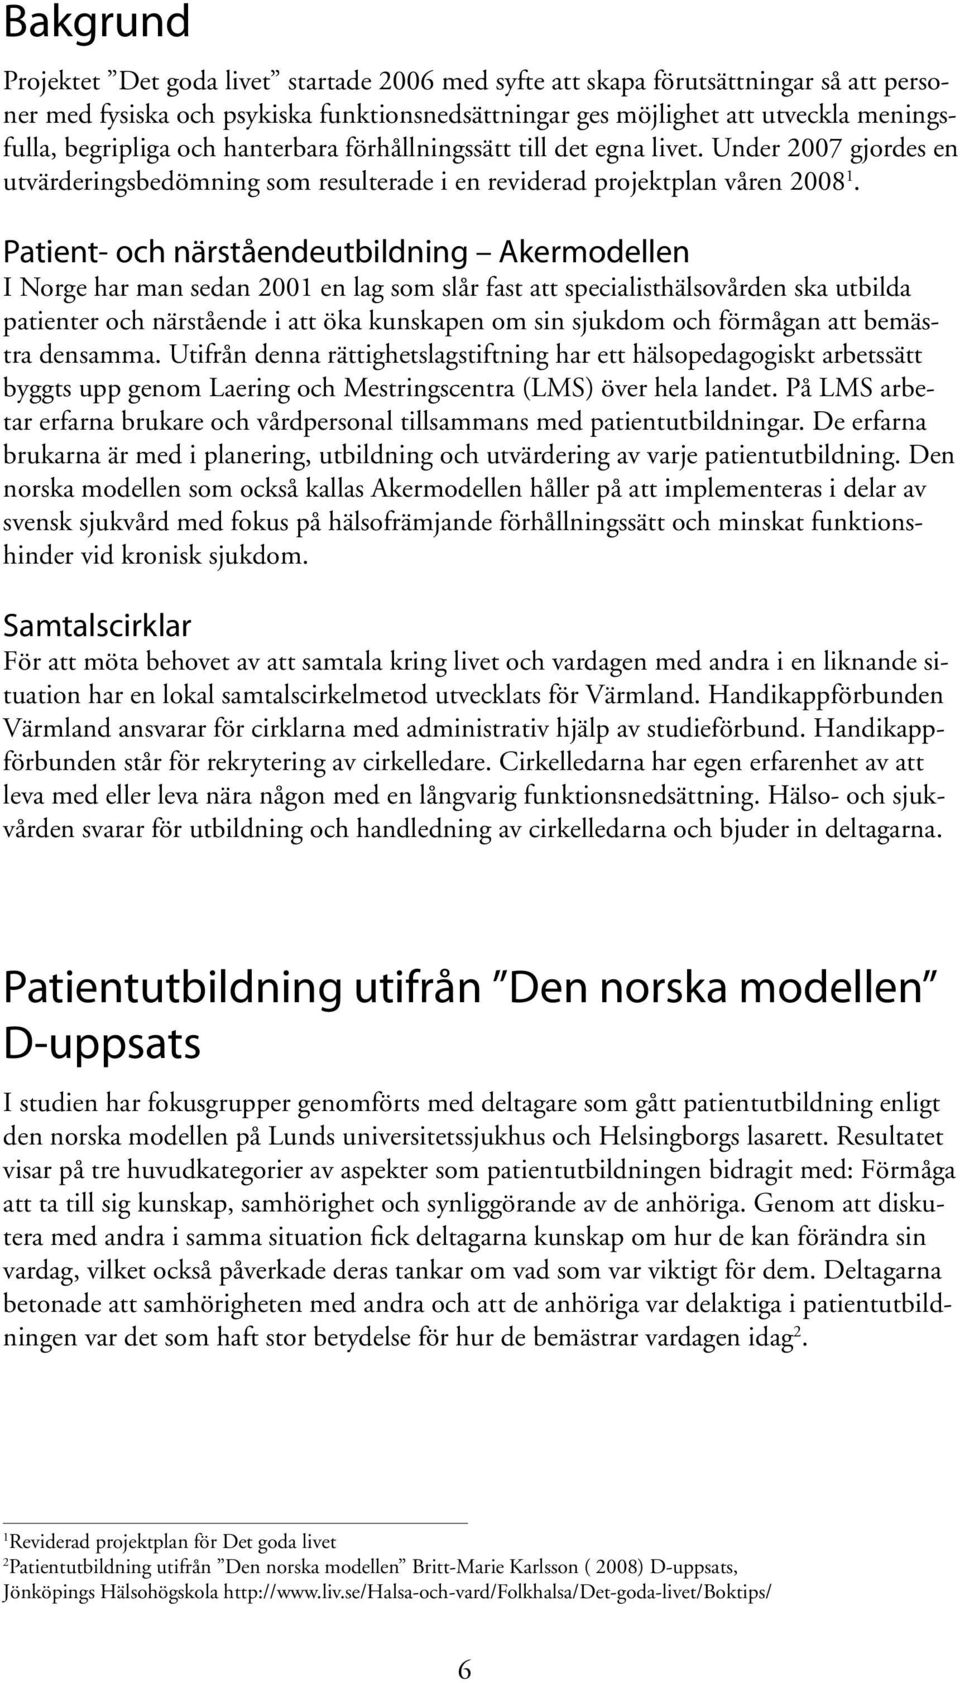 Patient- och närståendeutbildning Akermodellen I Norge har man sedan 2001 en lag som slår fast att specialisthälsovården ska utbilda patienter och närstående i att öka kunskapen om sin sjukdom och